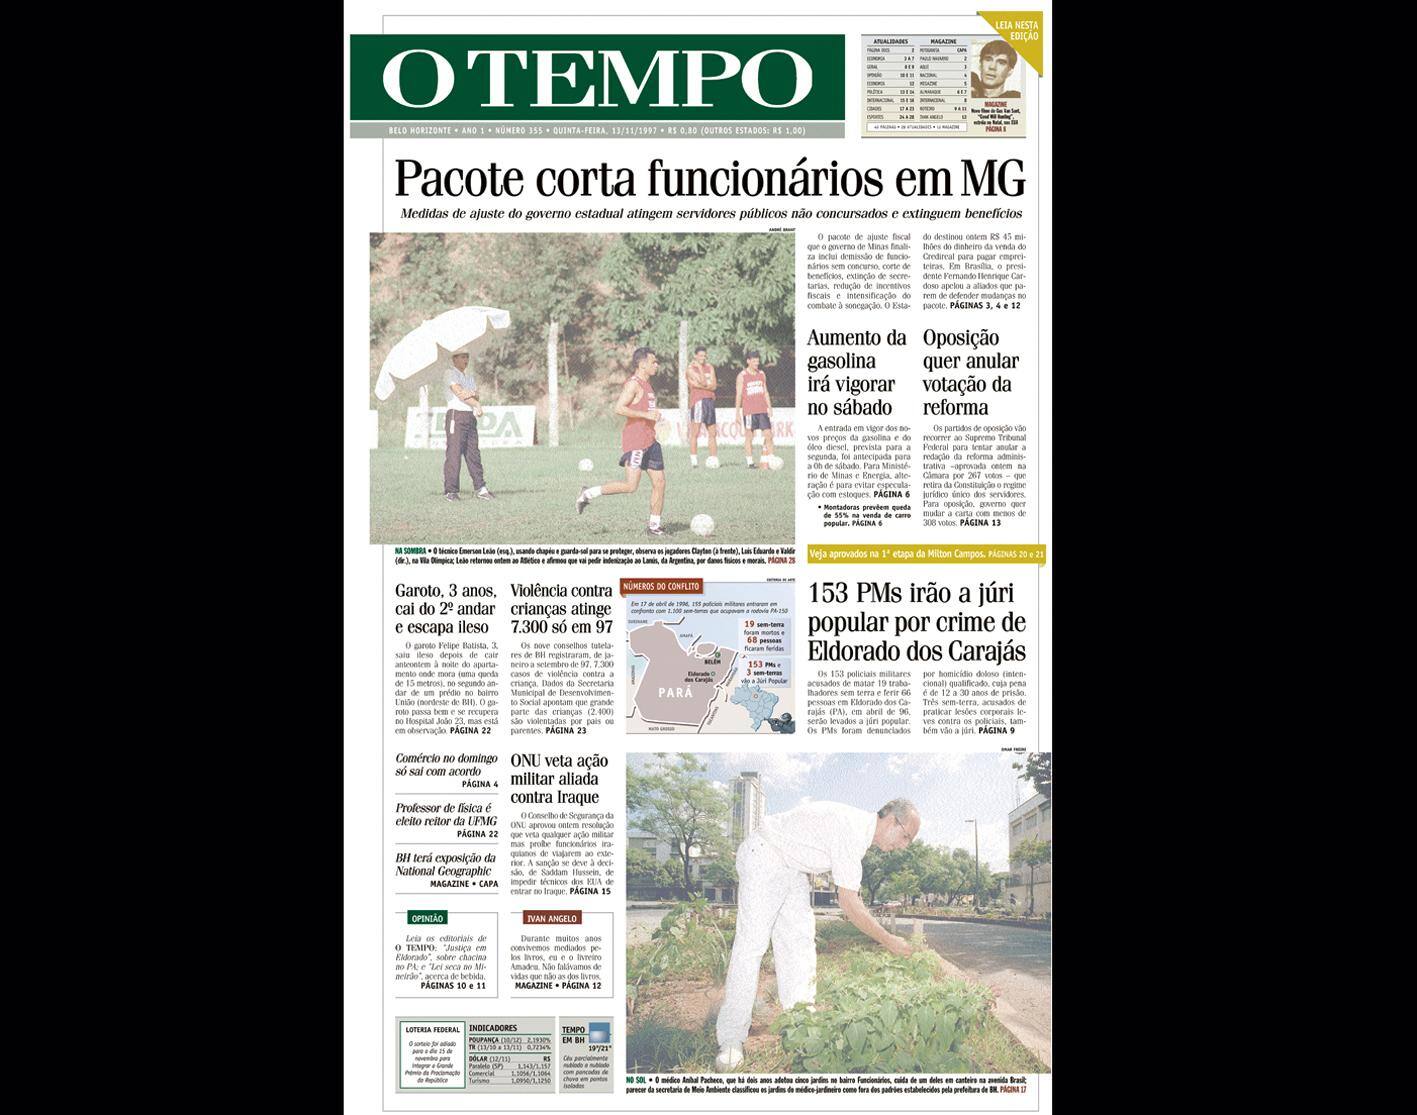 Capa do jornal O TEMPO no dia 13.11.1997; resgate do acervo marca as comemorações dos 25 anos da publicação